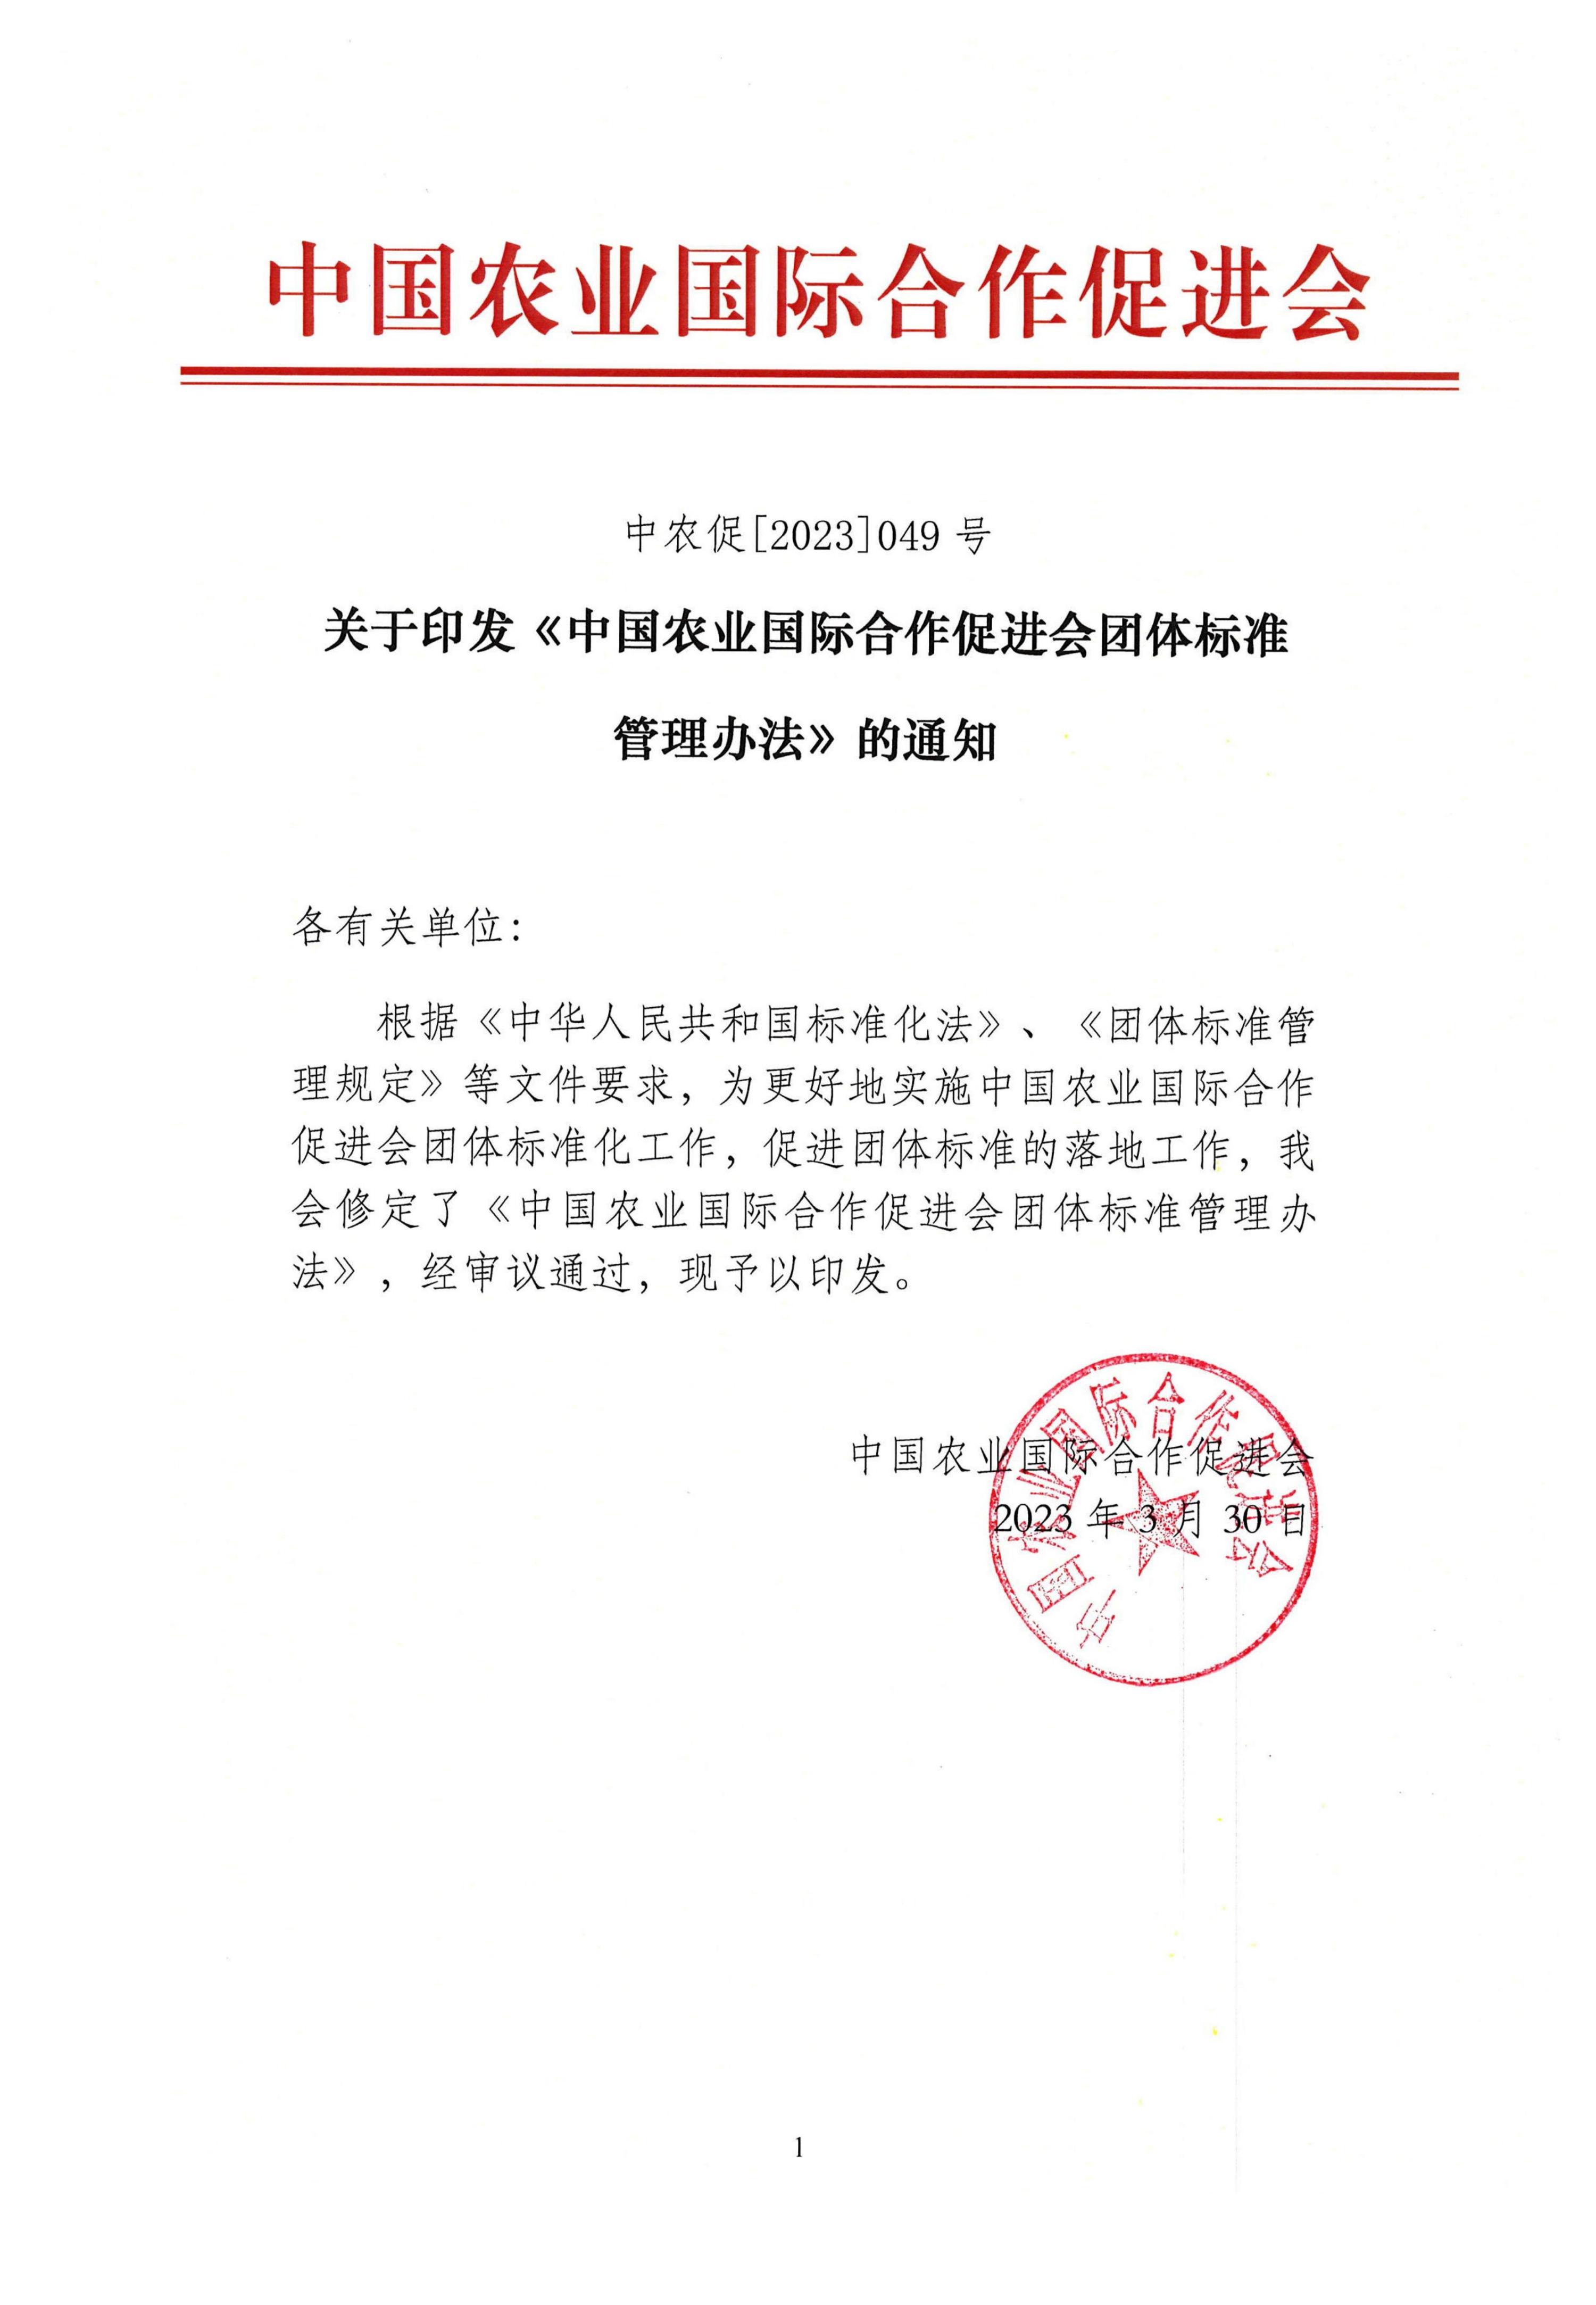 中国农业国际合作促进会协会标准管理办法（2023修订）_00